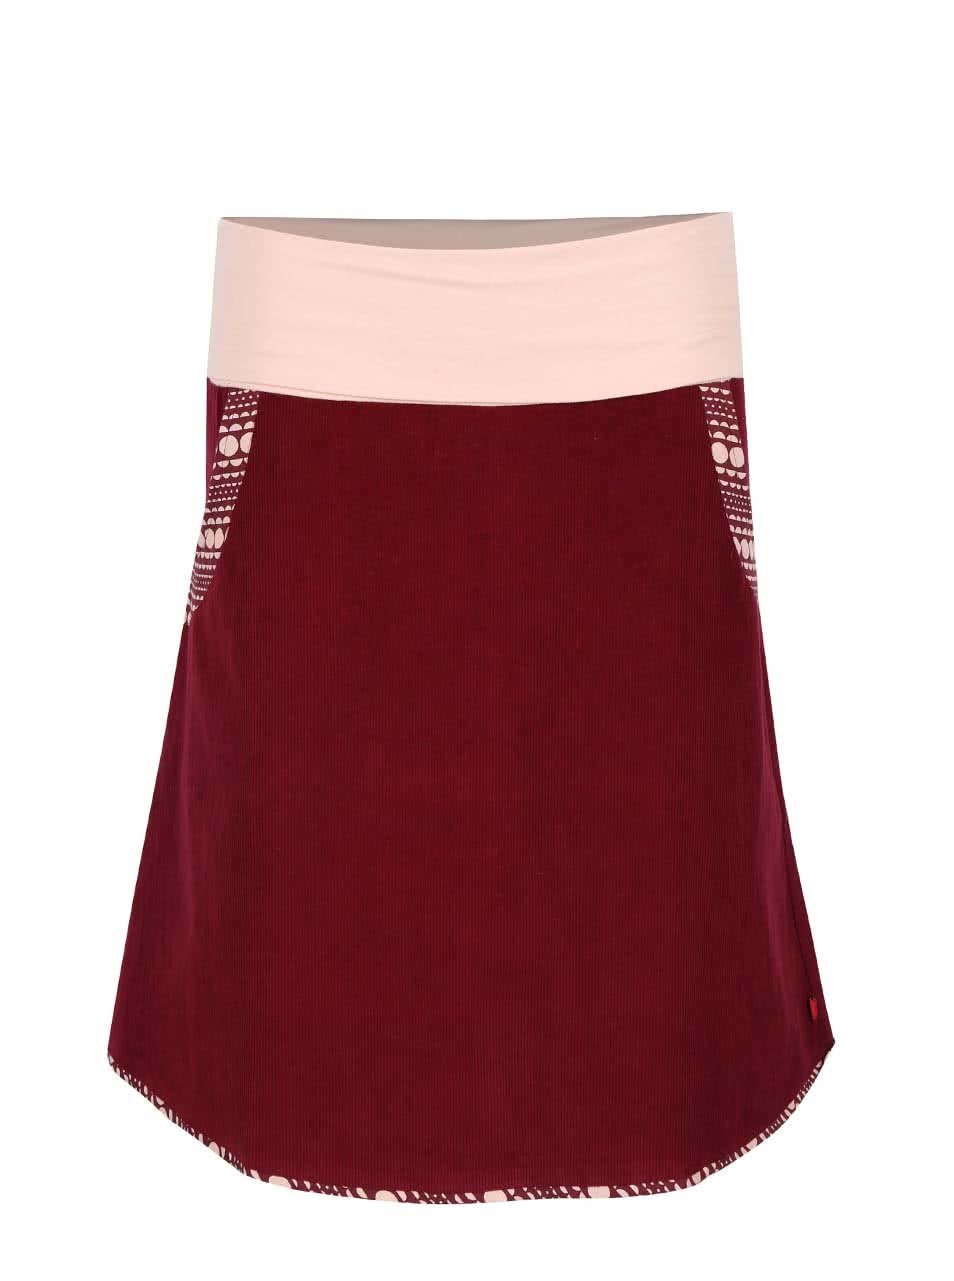 Vínová manšestrová sukně s elastickým pasem Tranquillo Batu